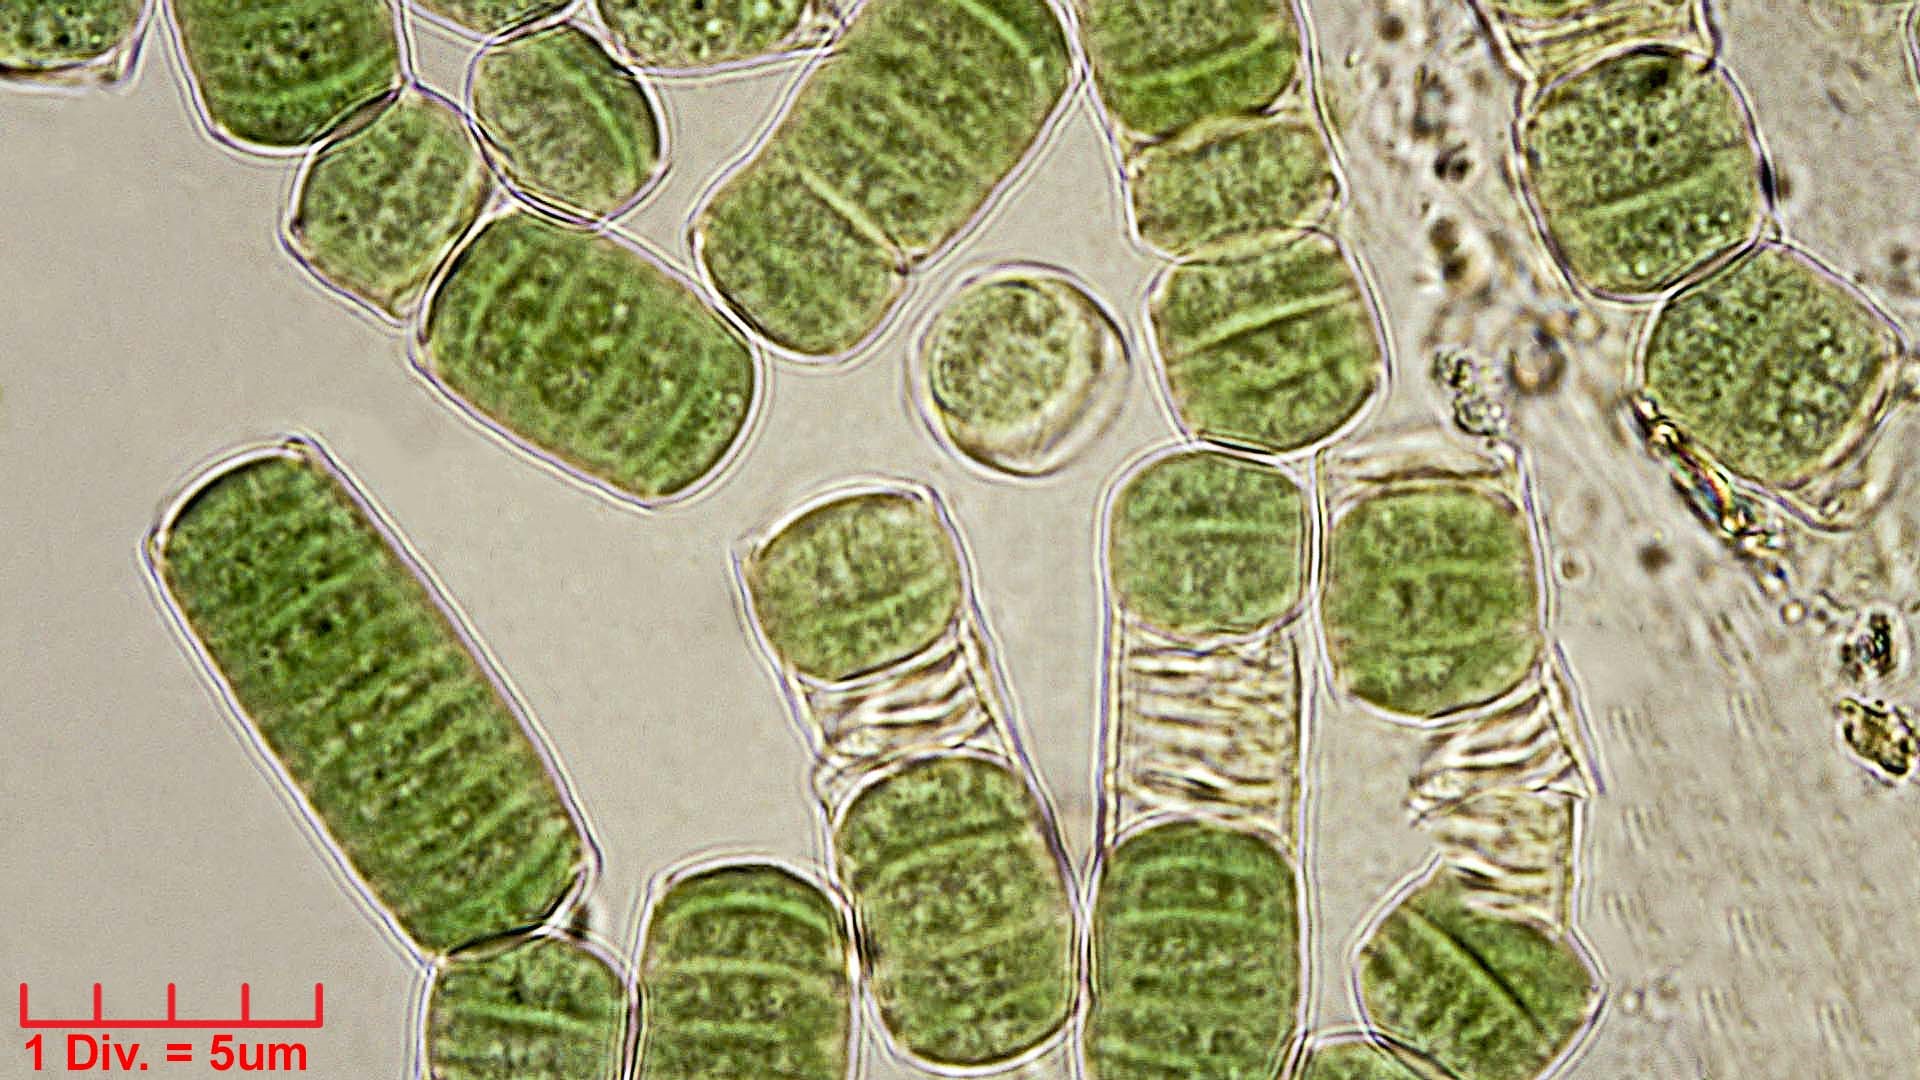 ./Cyanobacteria/Oscillatoriales/Oscillatoriaceae/Oscillatoria/curviceps/oscillatoria-curviceps-180.jpg